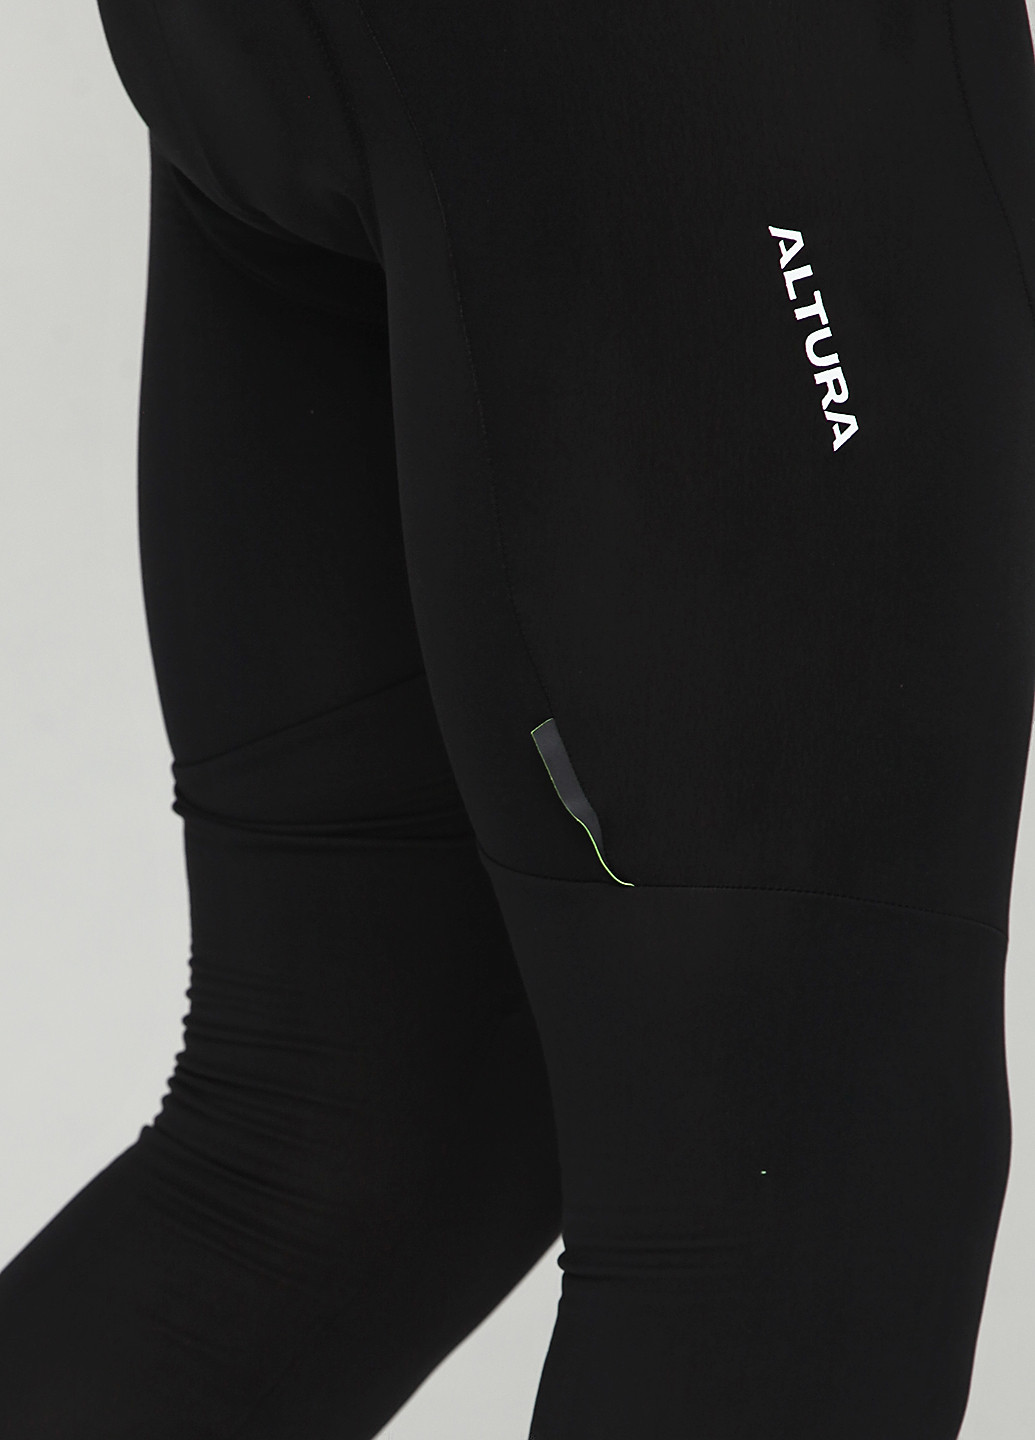 Комбінезон ALTURA комбінезон-брюки однотонний чорний спортивний